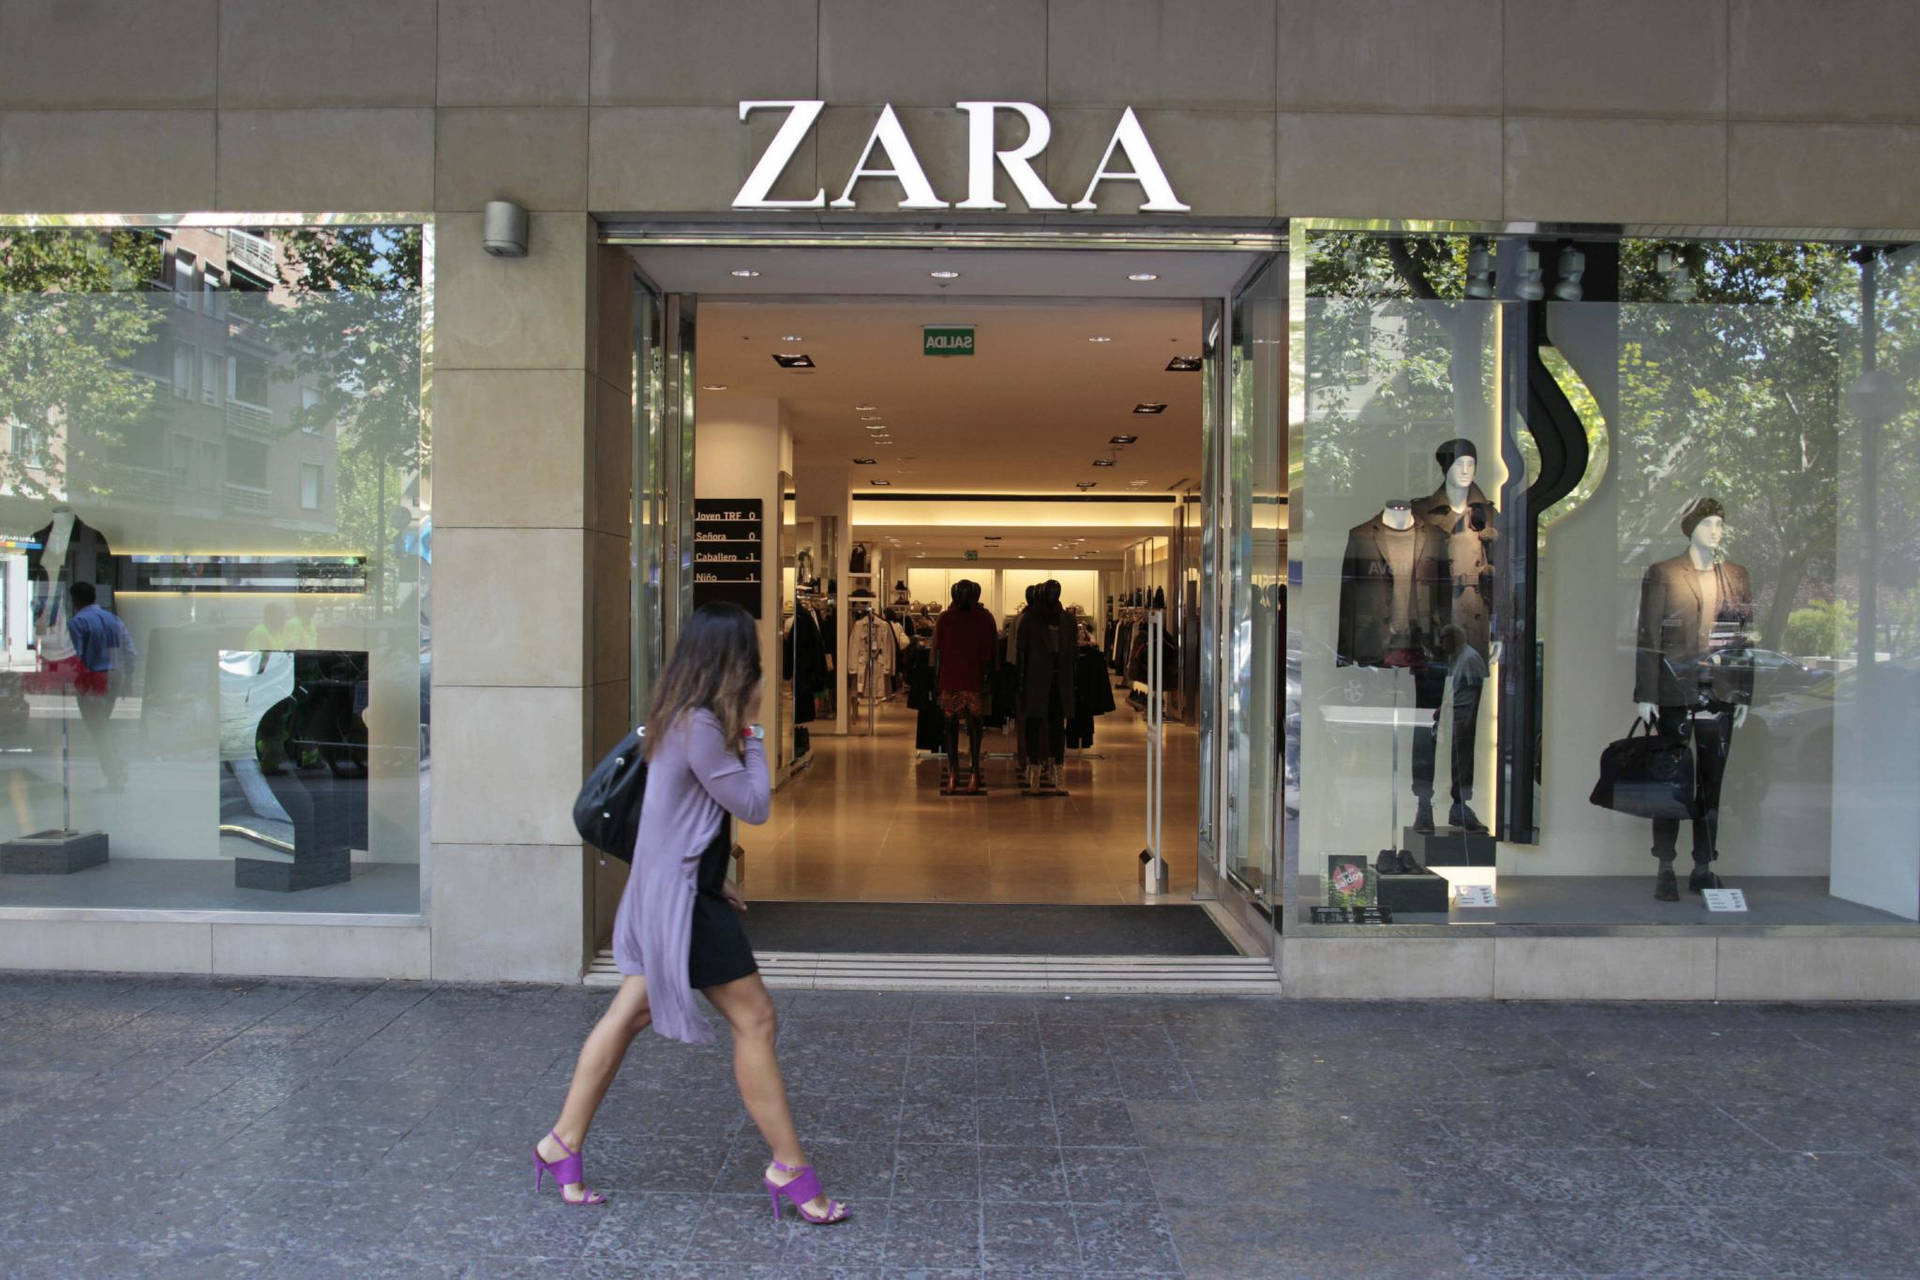 Zara Trendy Fashion Store Background